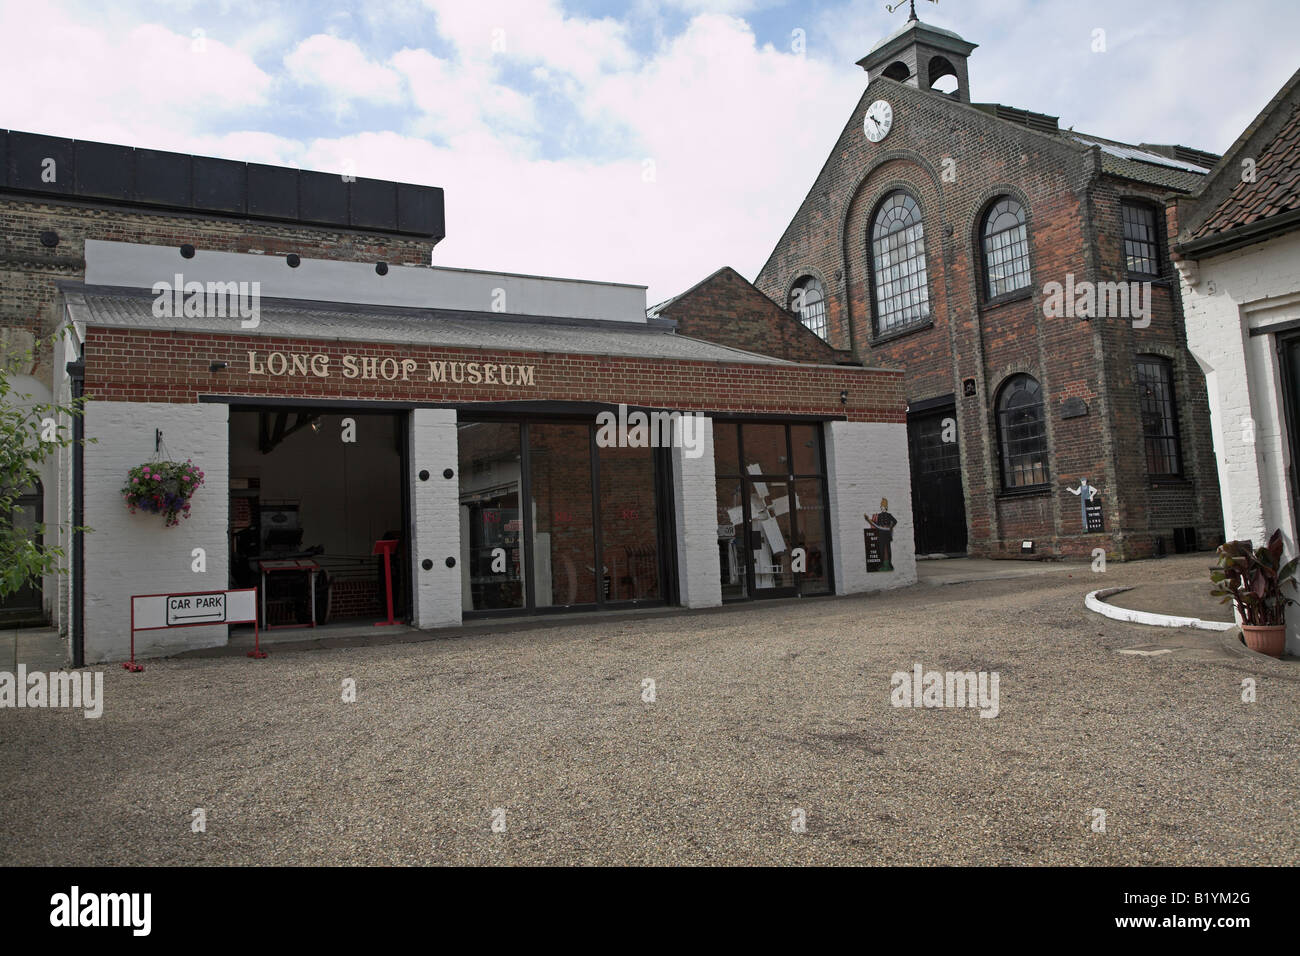 Long Shop museum a Garretts ex fabbrica di ingegneria, a Leiston, Suffolk, Inghilterra Foto Stock